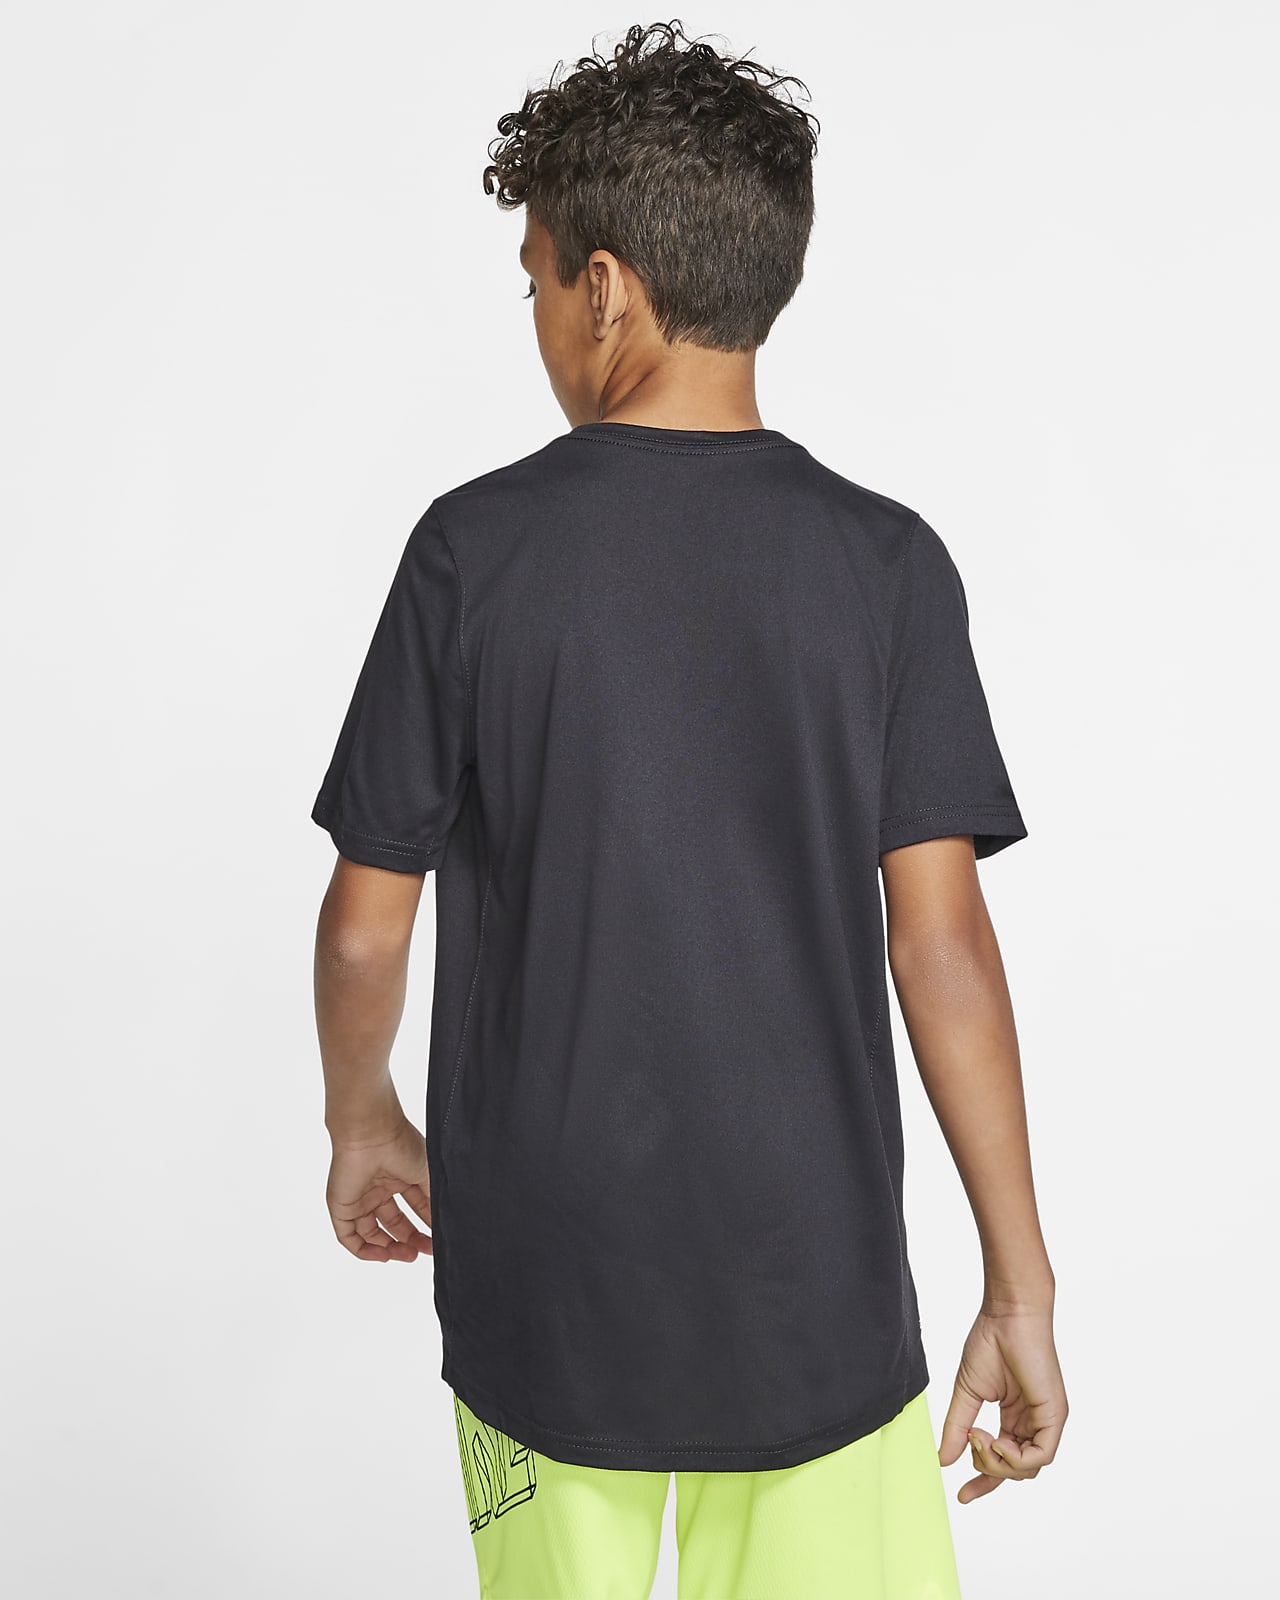 Nike Dri-FIT Big Kids' Swoosh Training T-Shirt. Nike.com